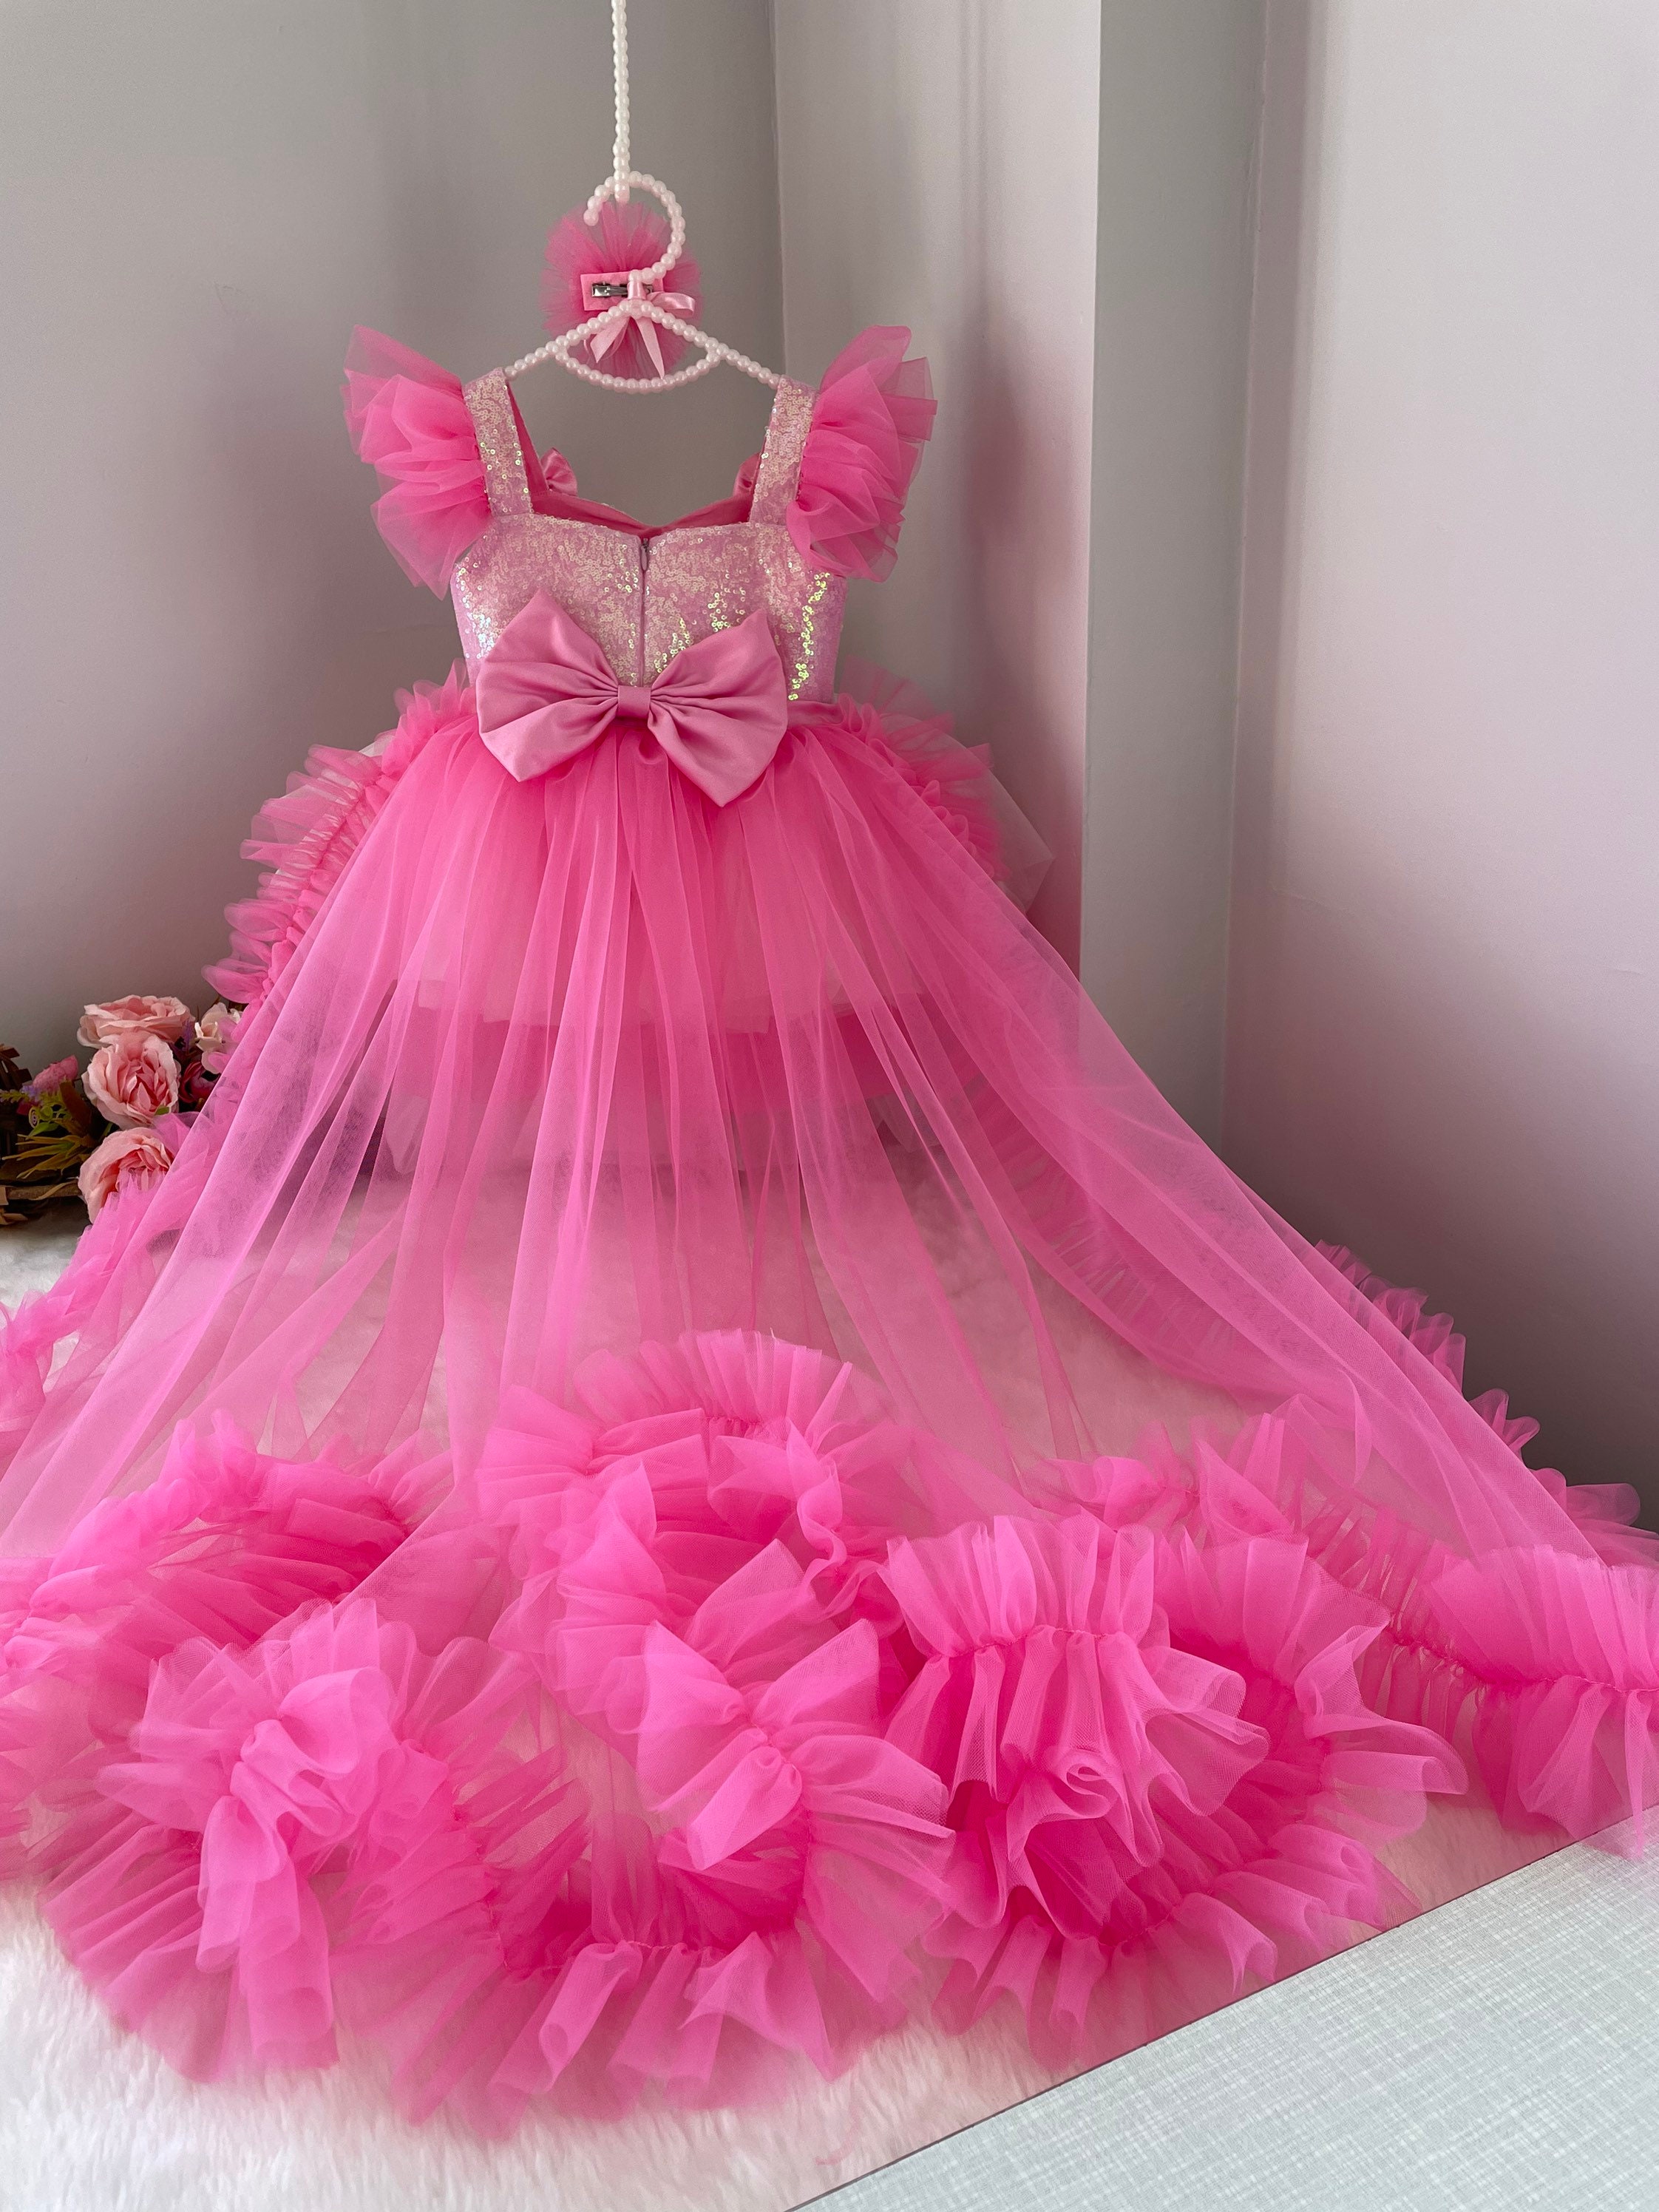 Barbie Dresses: Papilio Boutique's Glamorous Fashion Collection